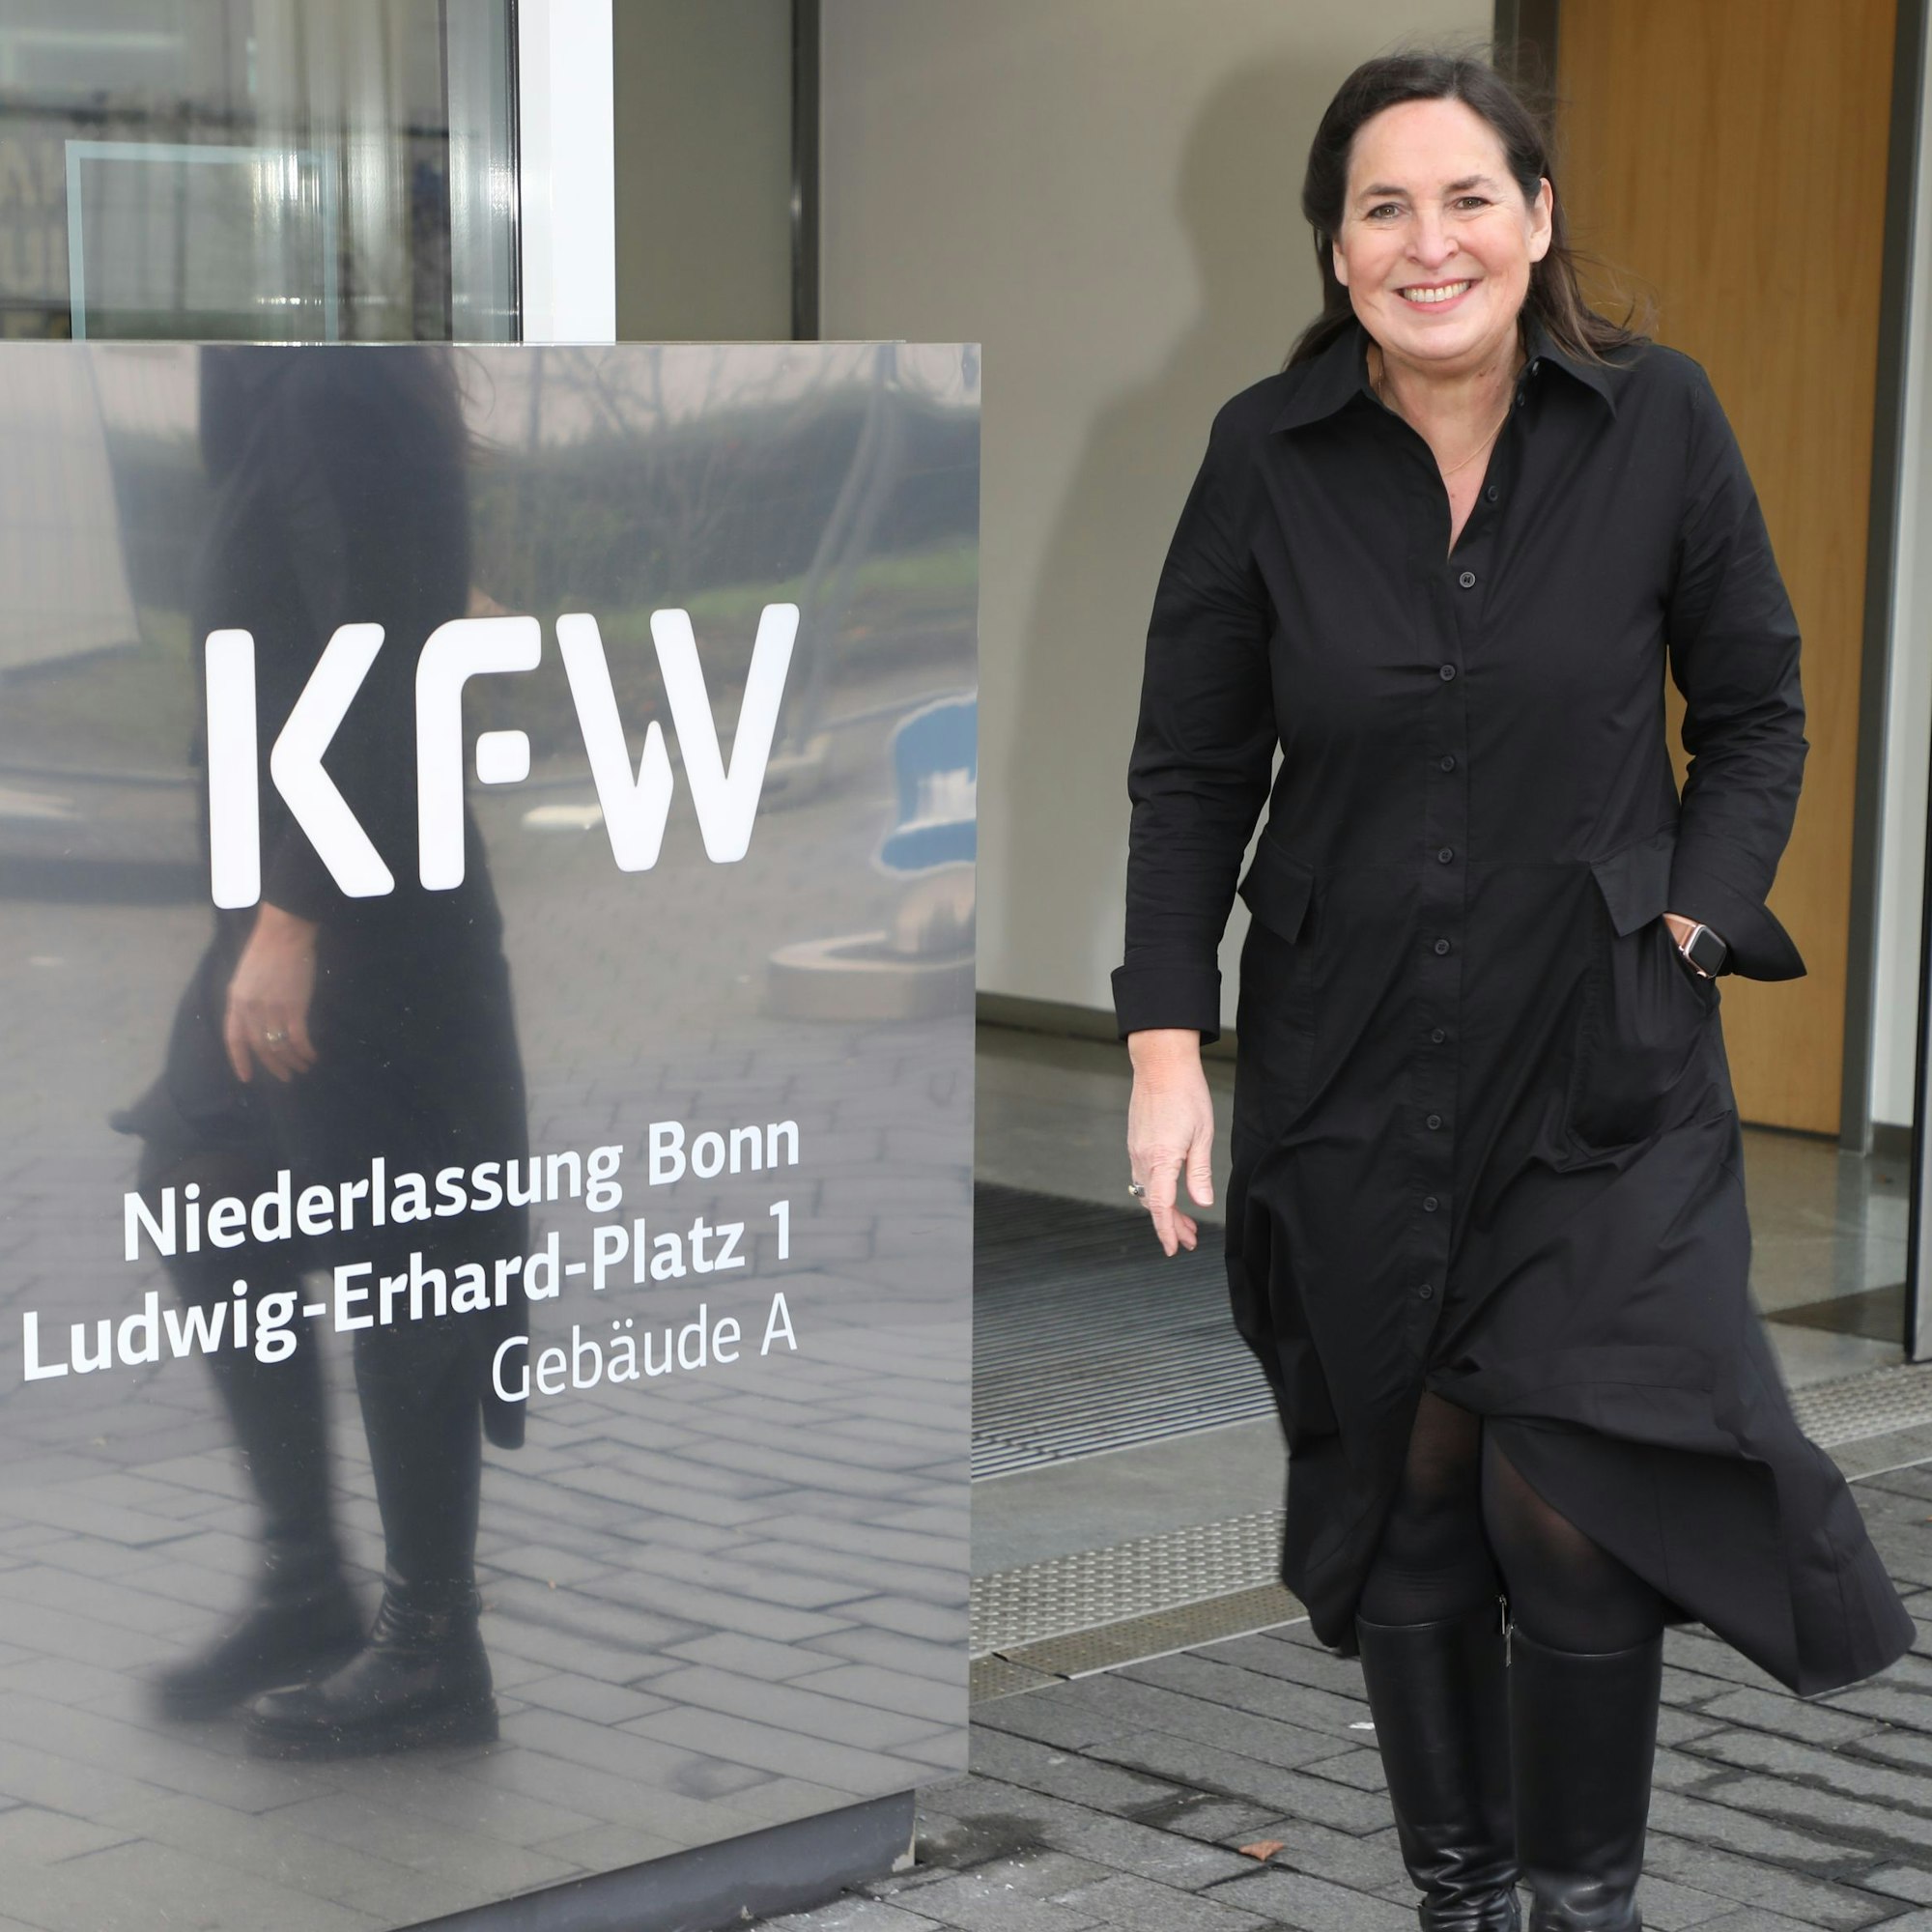 Jungfrau Sabine (Auweiler) geht an einem Schild mit der Aufschrift „KfW“ vorbei.